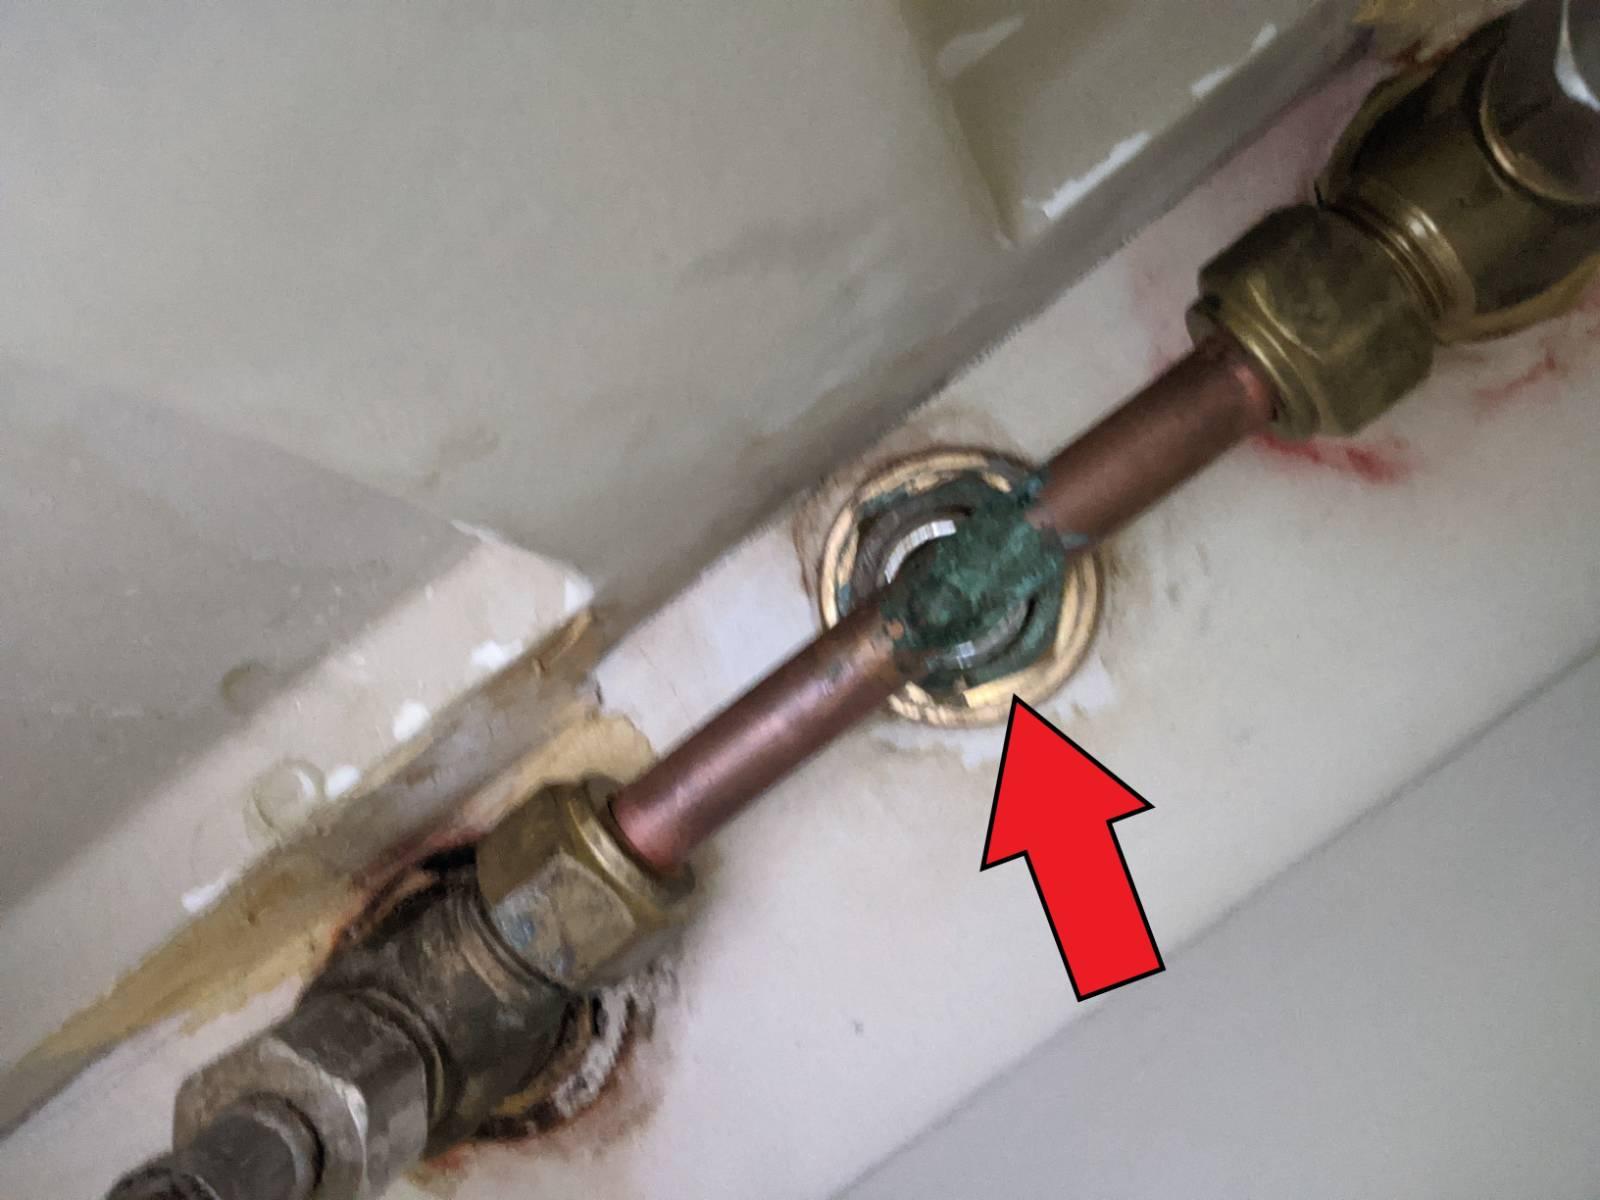 How to tighten faucet nut under bath sink